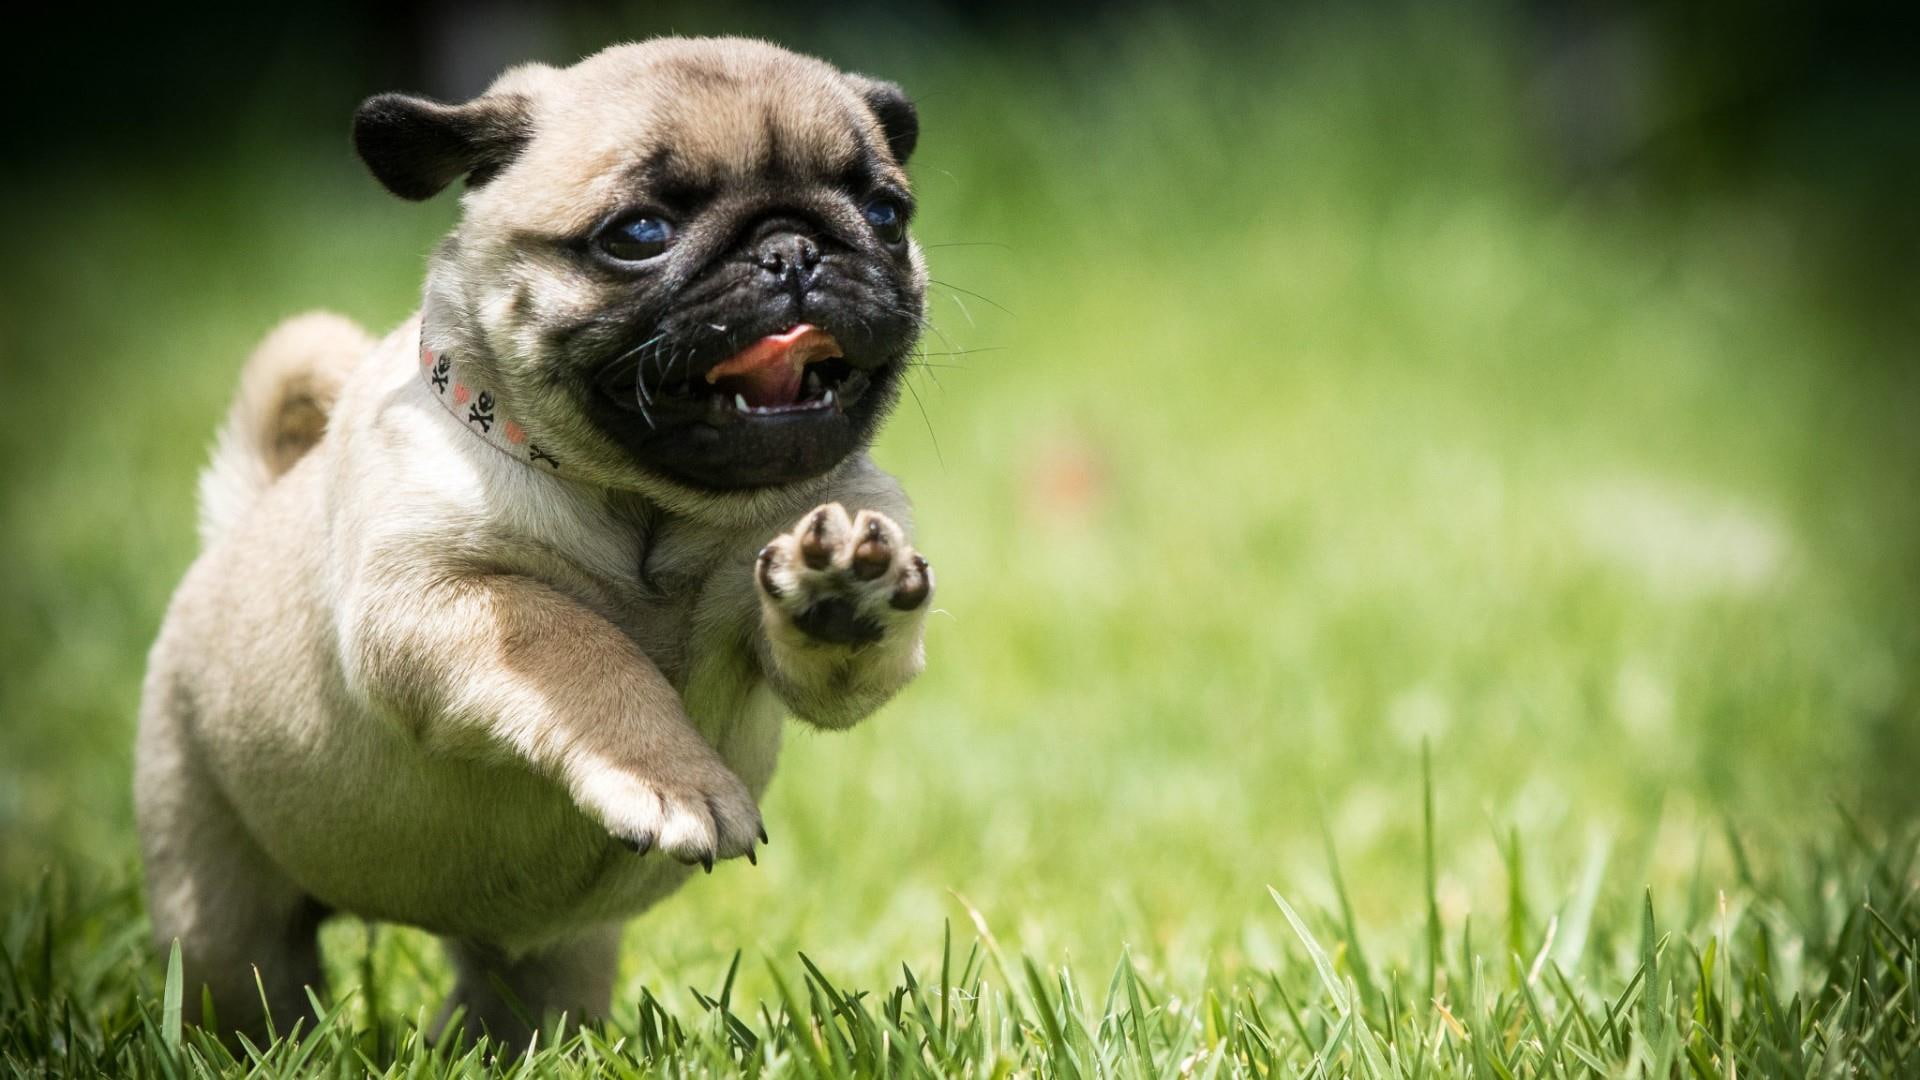 pug, dog, field, run, puppy, grass, cute, mops